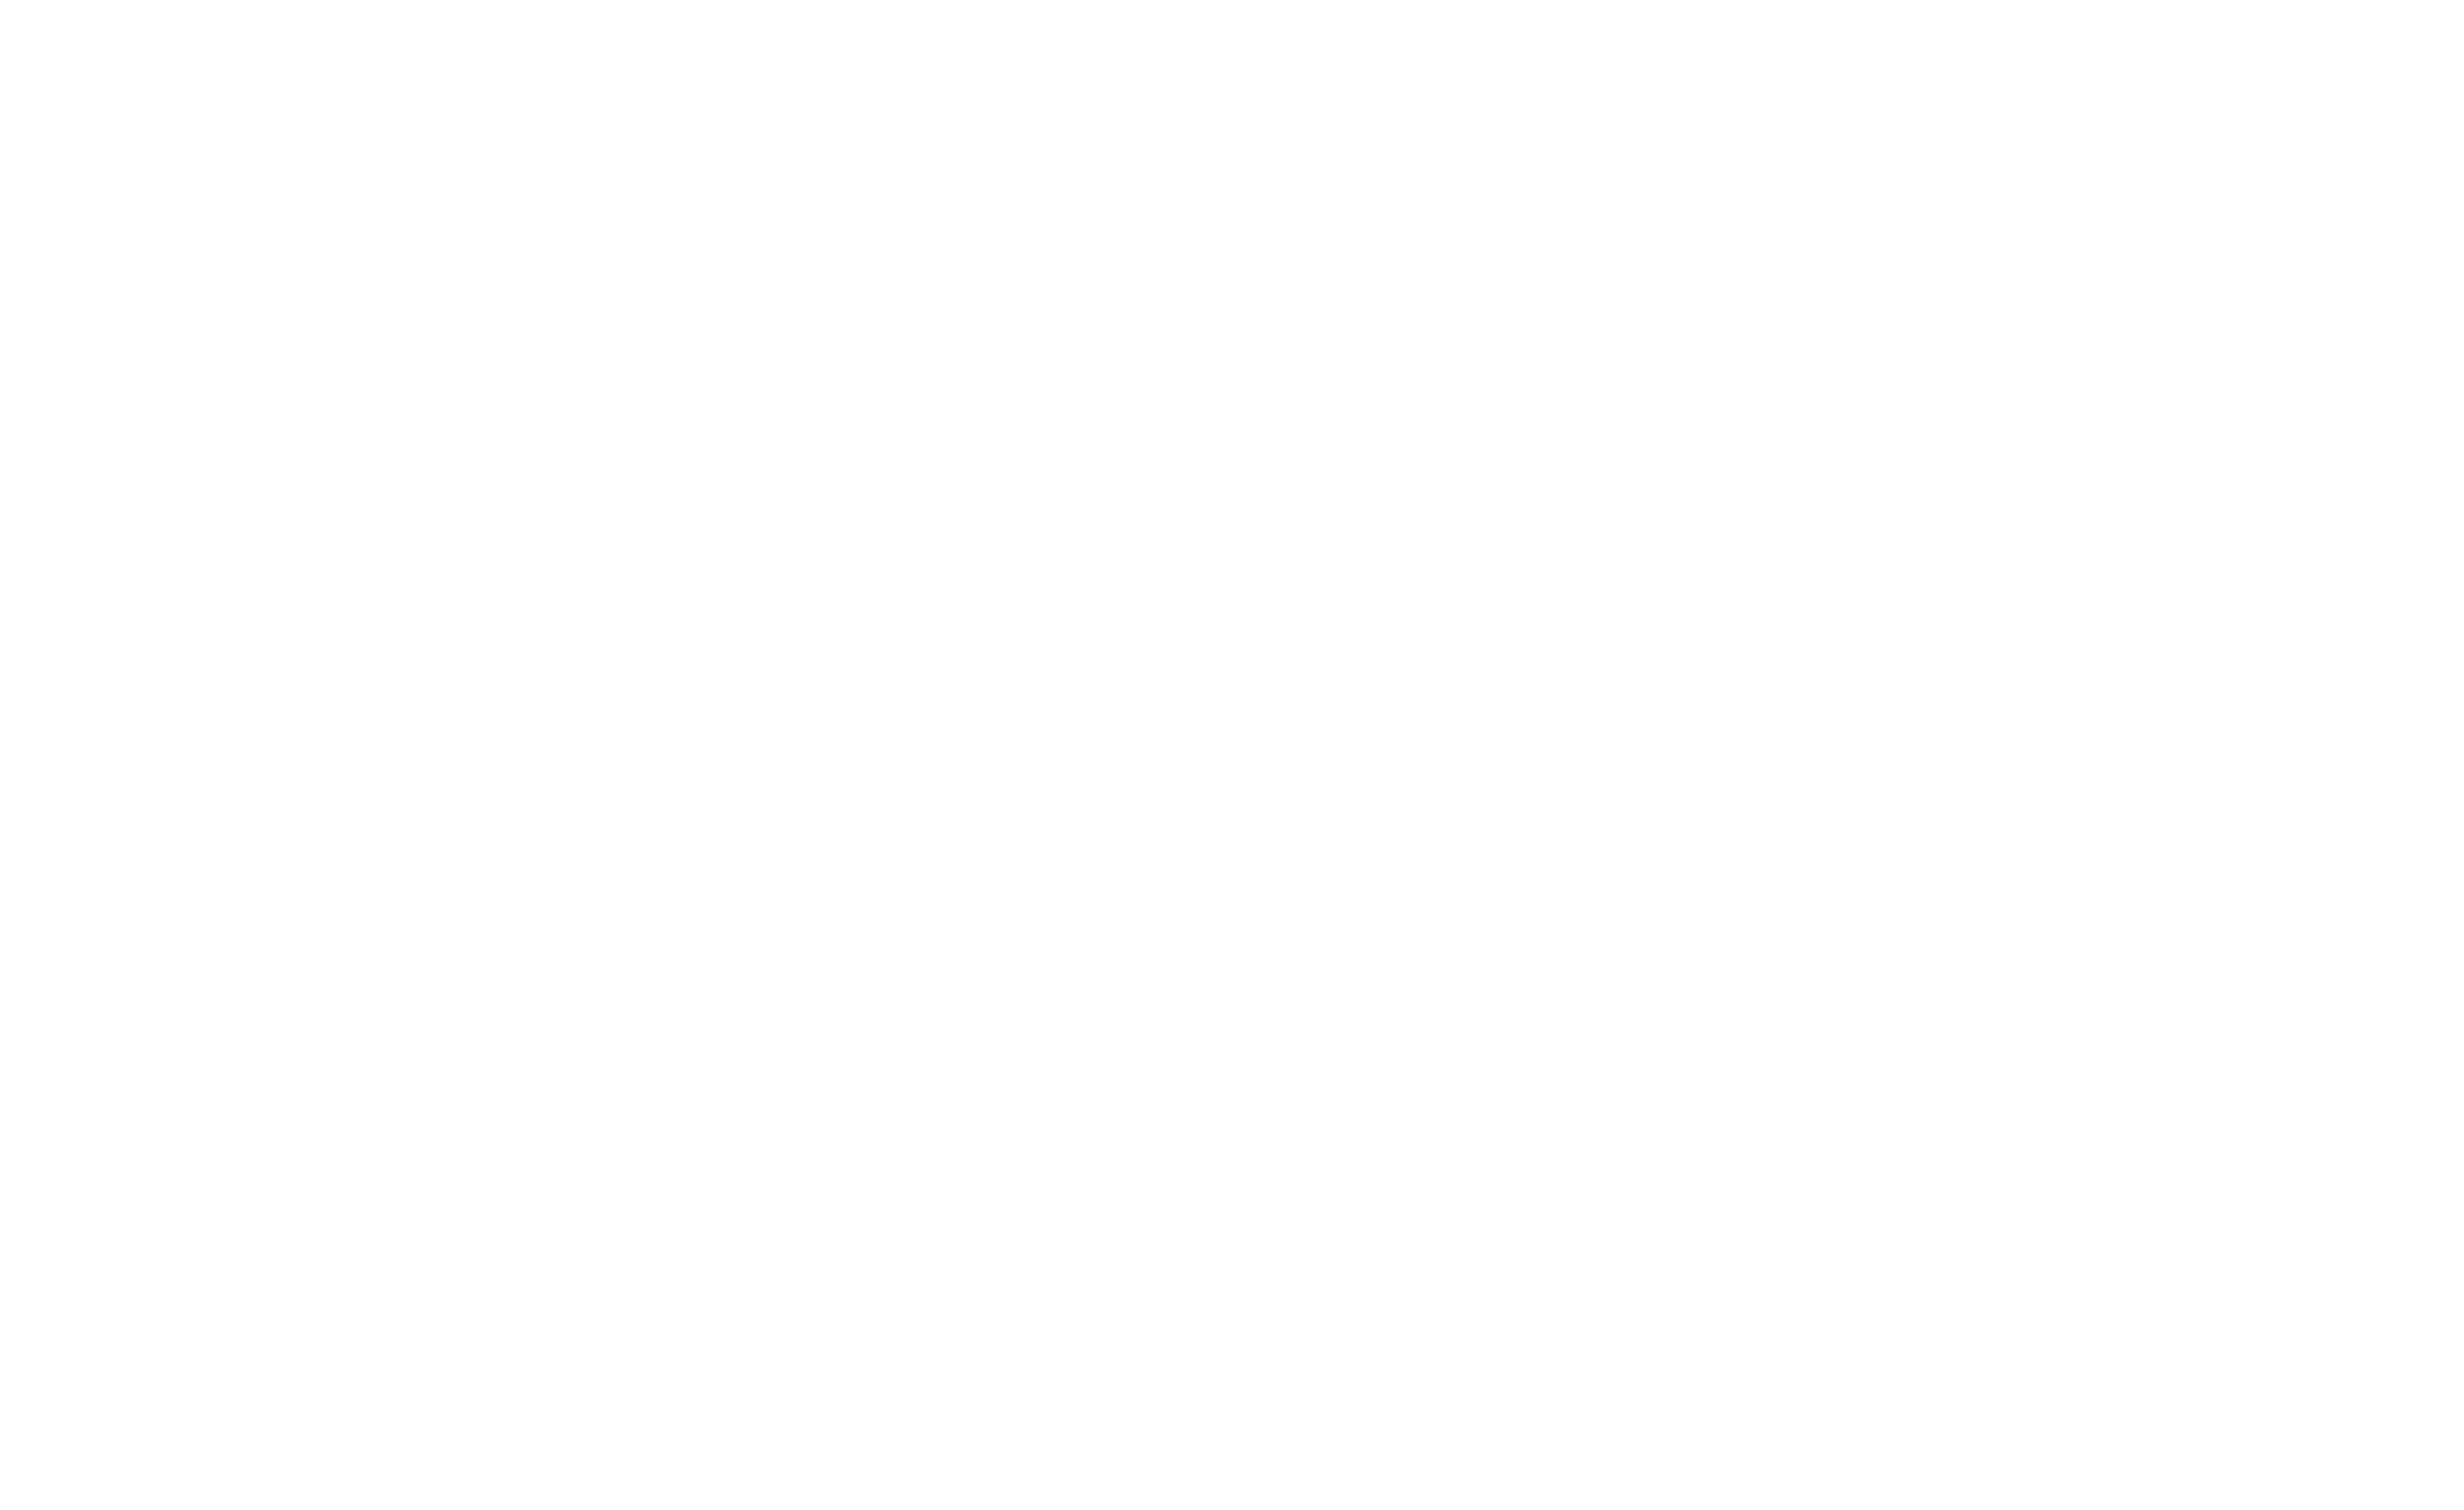 日興運輸株式会社 Welcome to Our Corporate Site